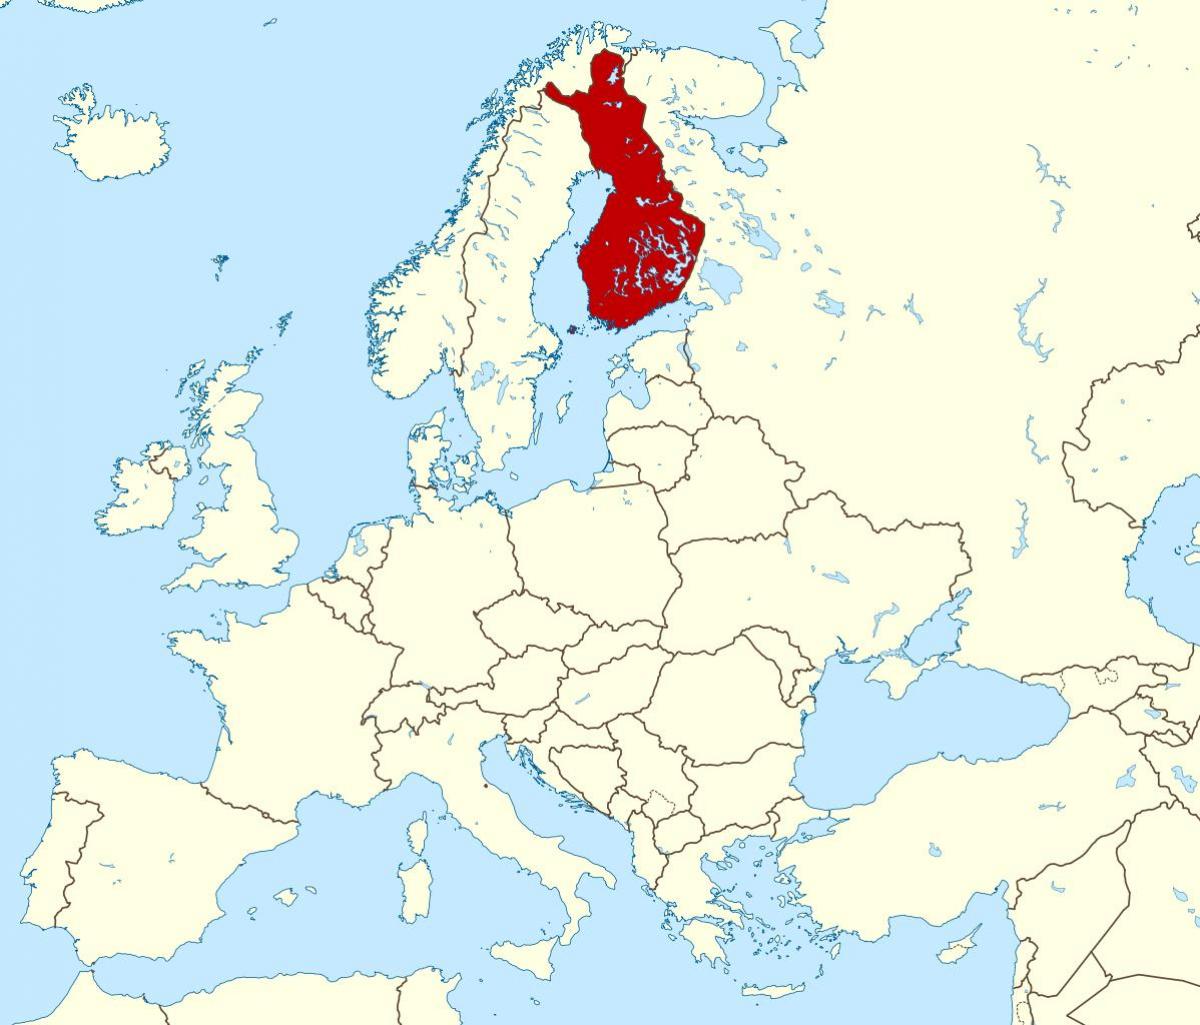 världskarta som visar Finland